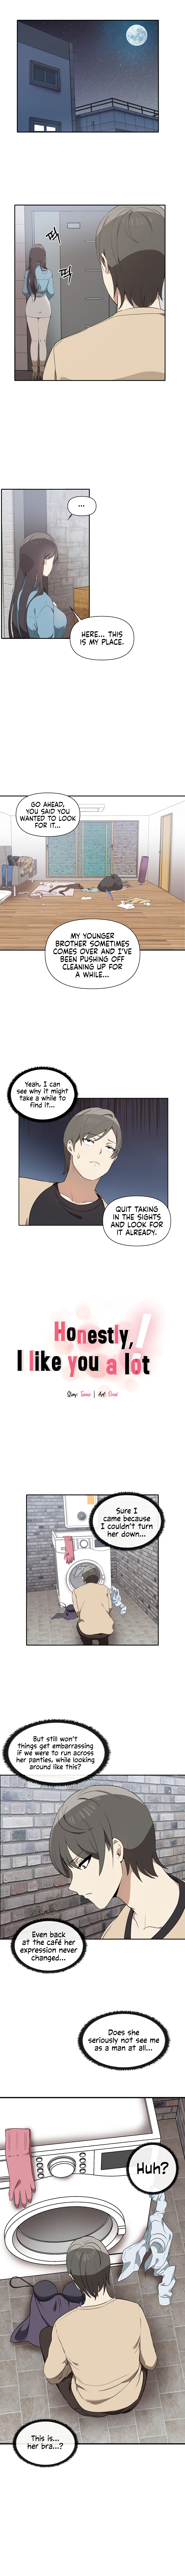 Honestly, I Like You A Lot! - Page 2